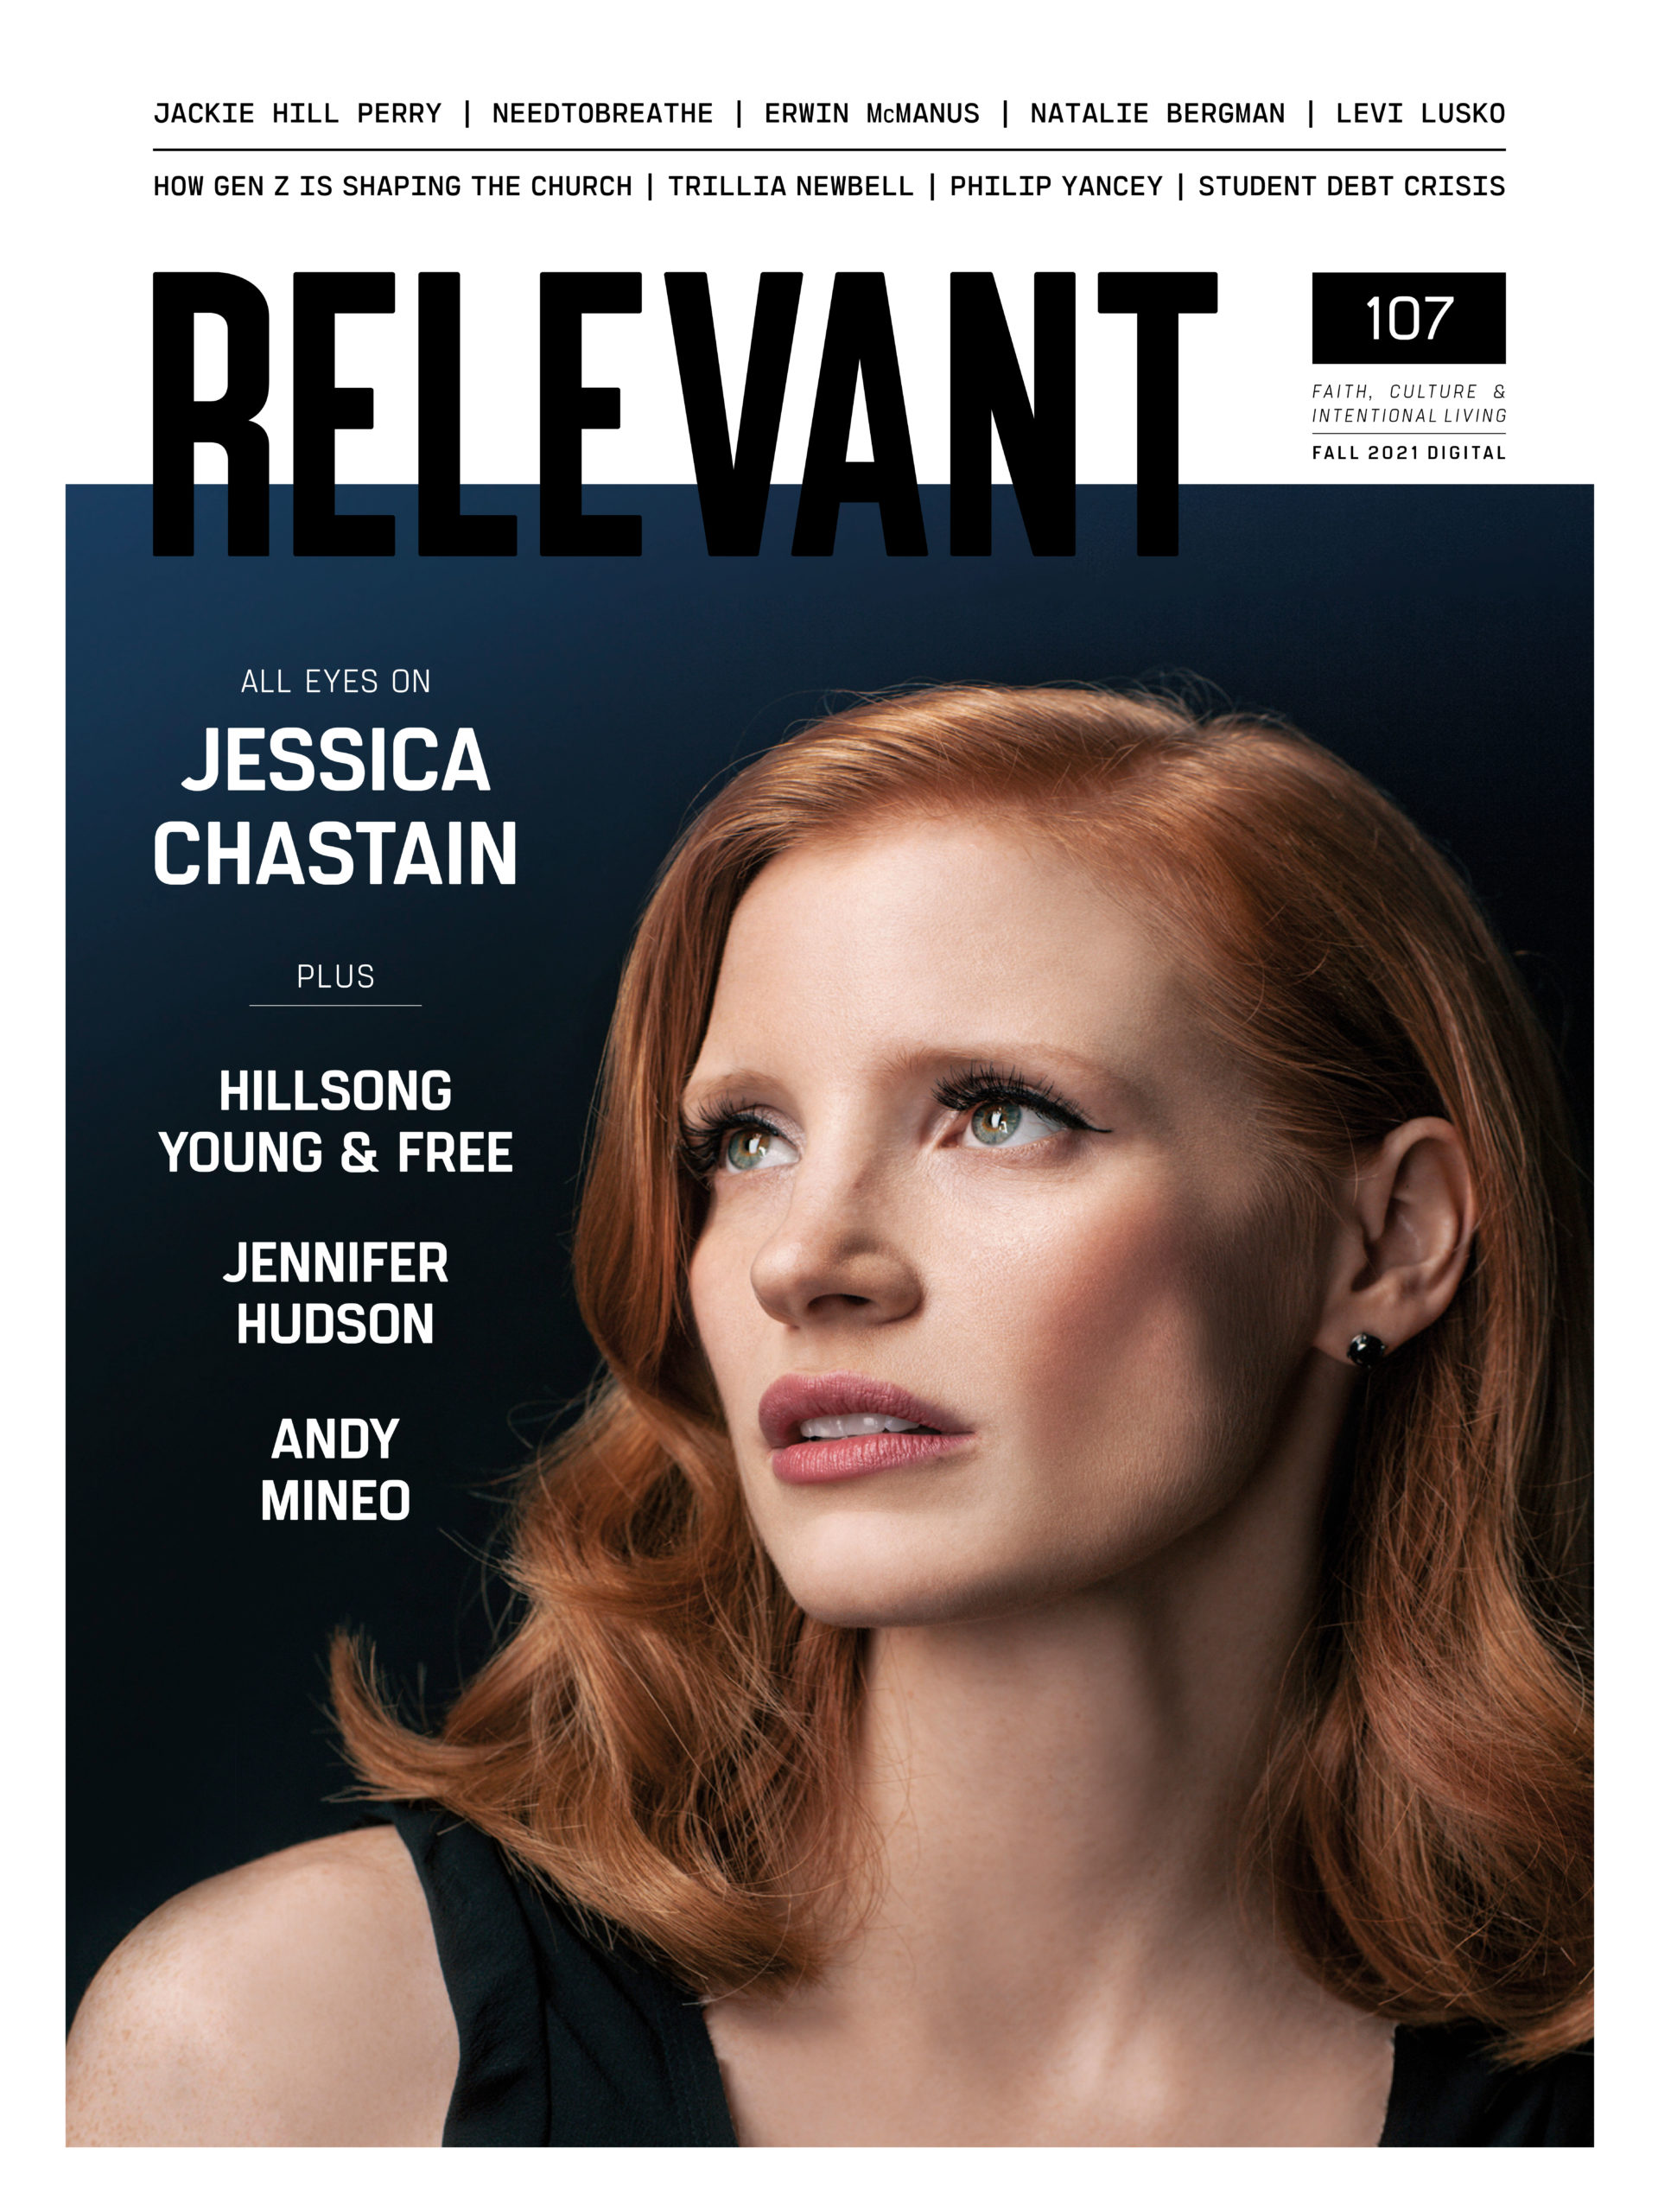 RELEVANT Magazine RELEVANT